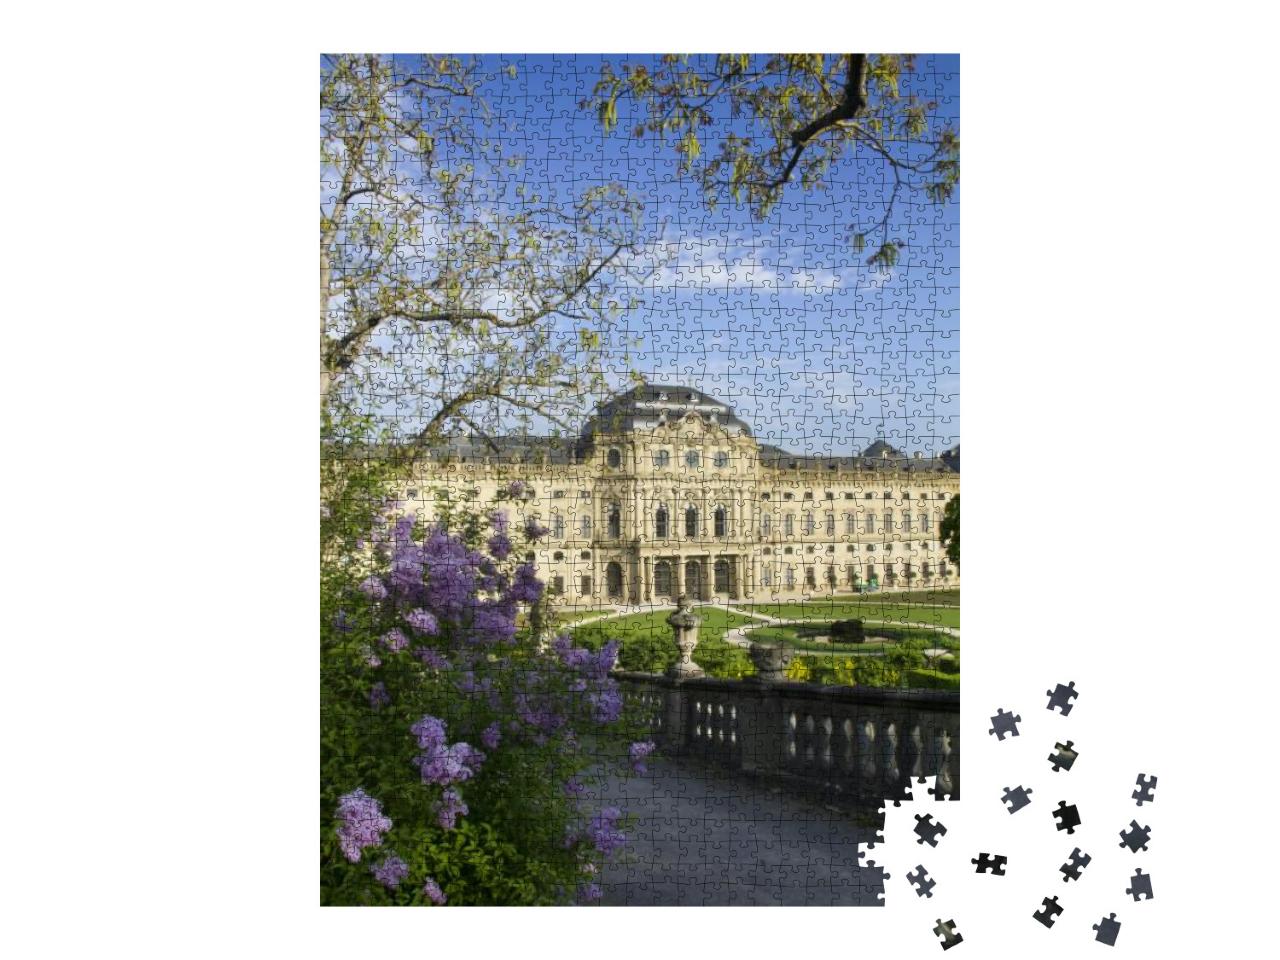 Worzburg Residenz... Jigsaw Puzzle with 1000 pieces